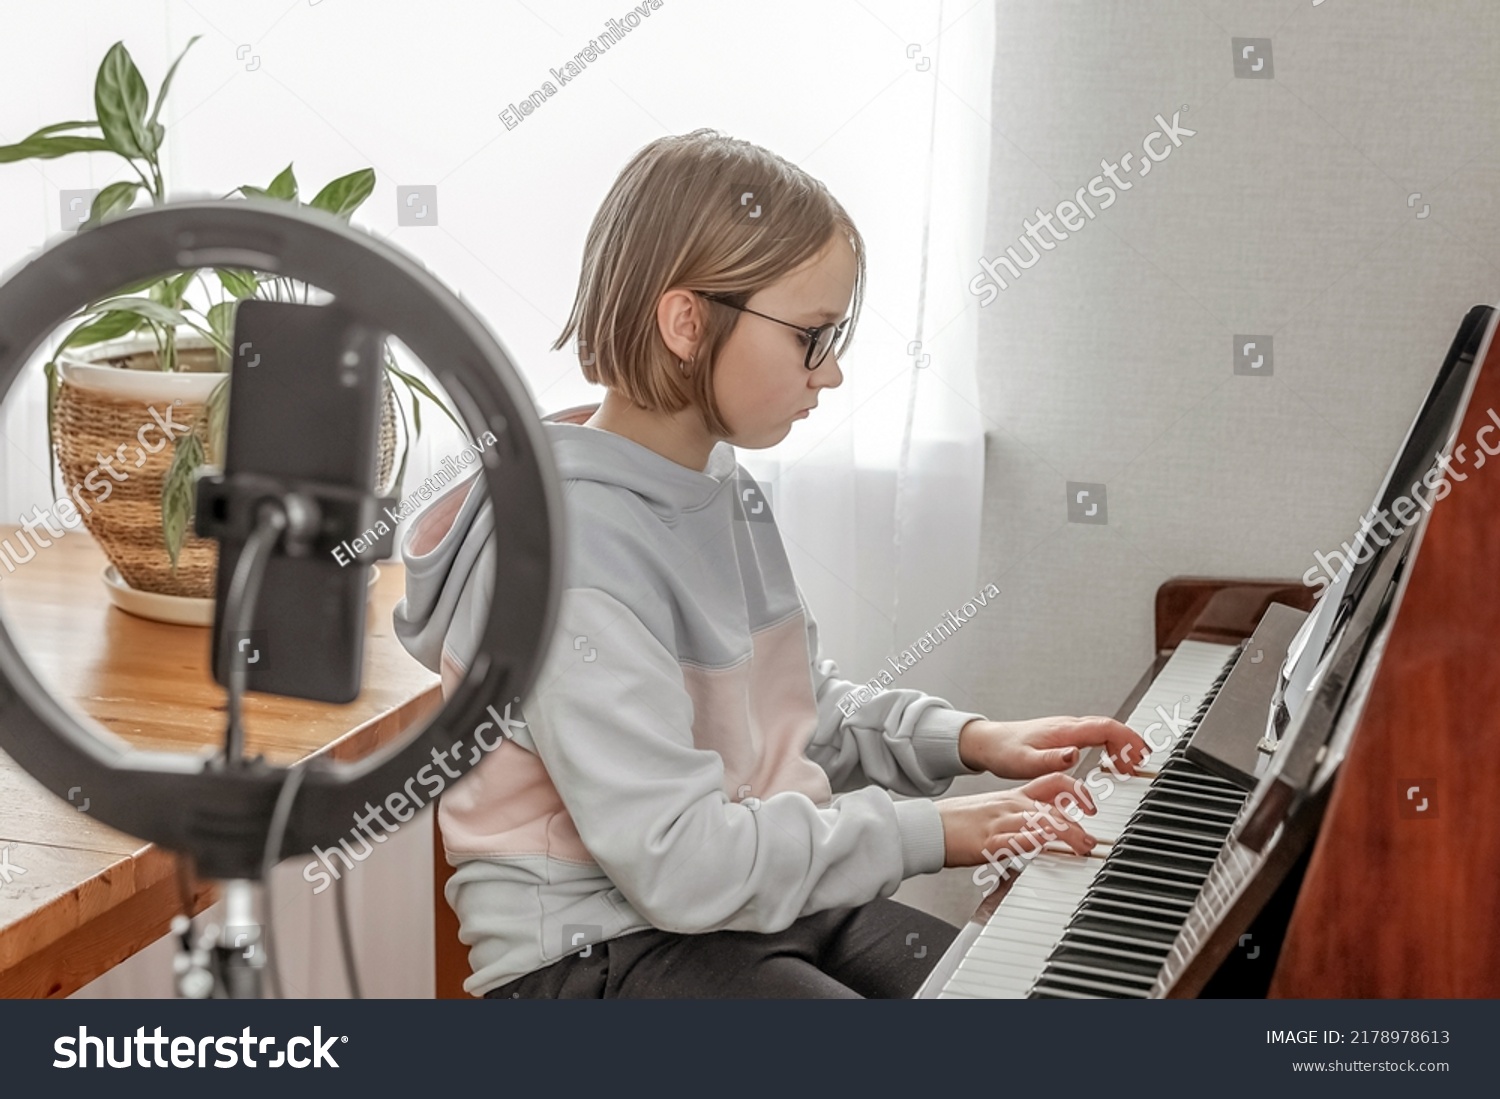 52 ピアノ イラスト かわいい 鍵盤 Stock Photos Images Photography Shutterstock